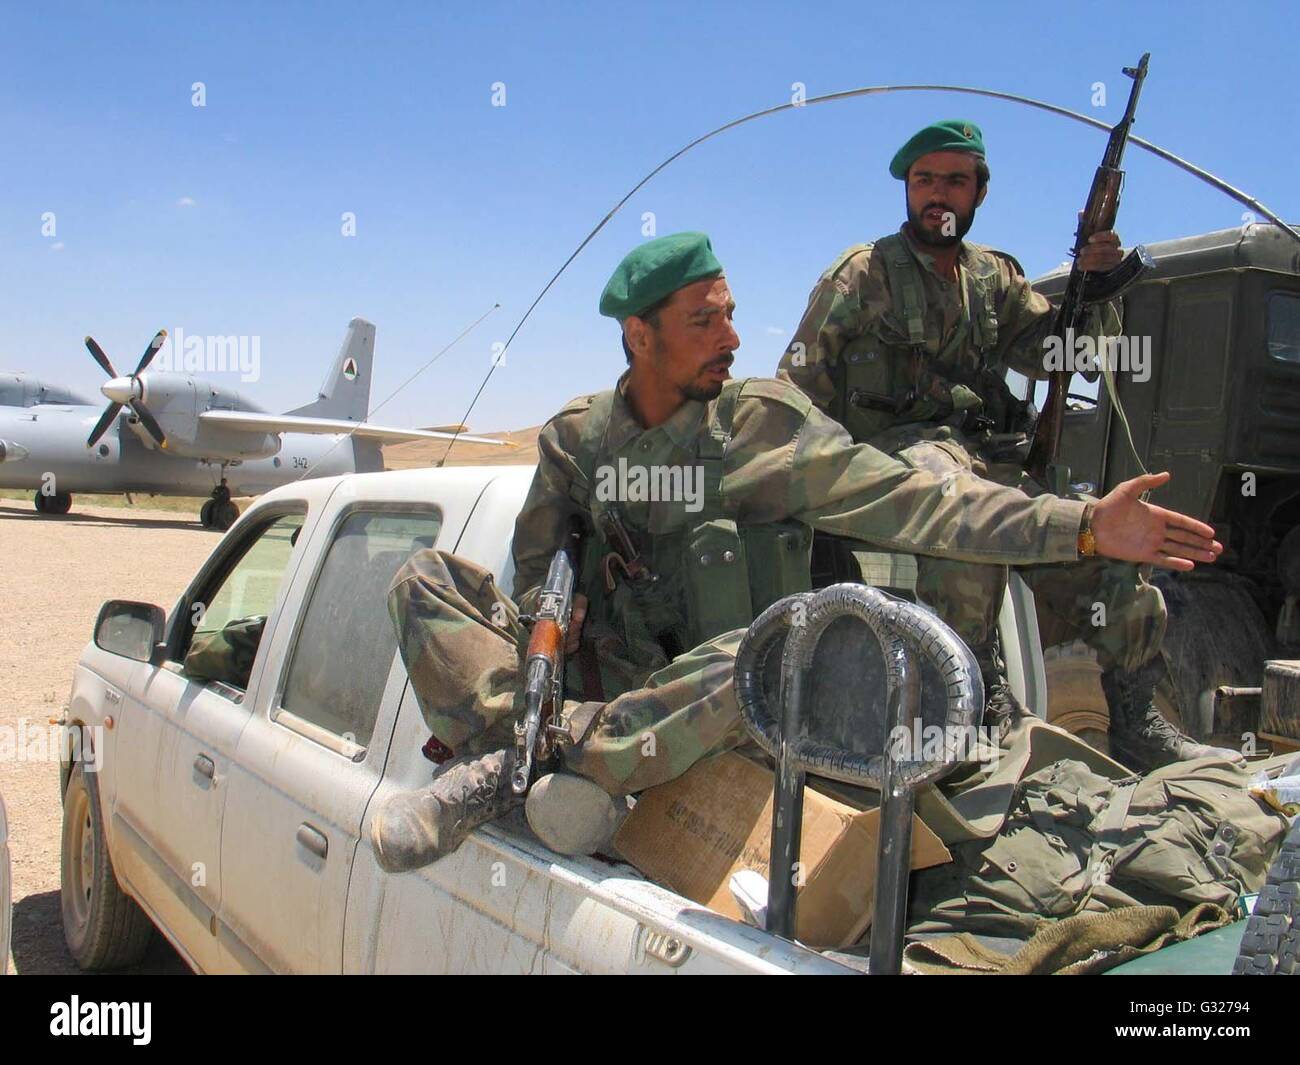 Beijing, el Ejército Nacional Afgano (ANA) soldados en Chaghcharan. El 5 de  junio, 2016. Foto de archivo tomada por Zabihullah Tamana el 24 de junio de  2004 muestra el Ejército Nacional Afgano (